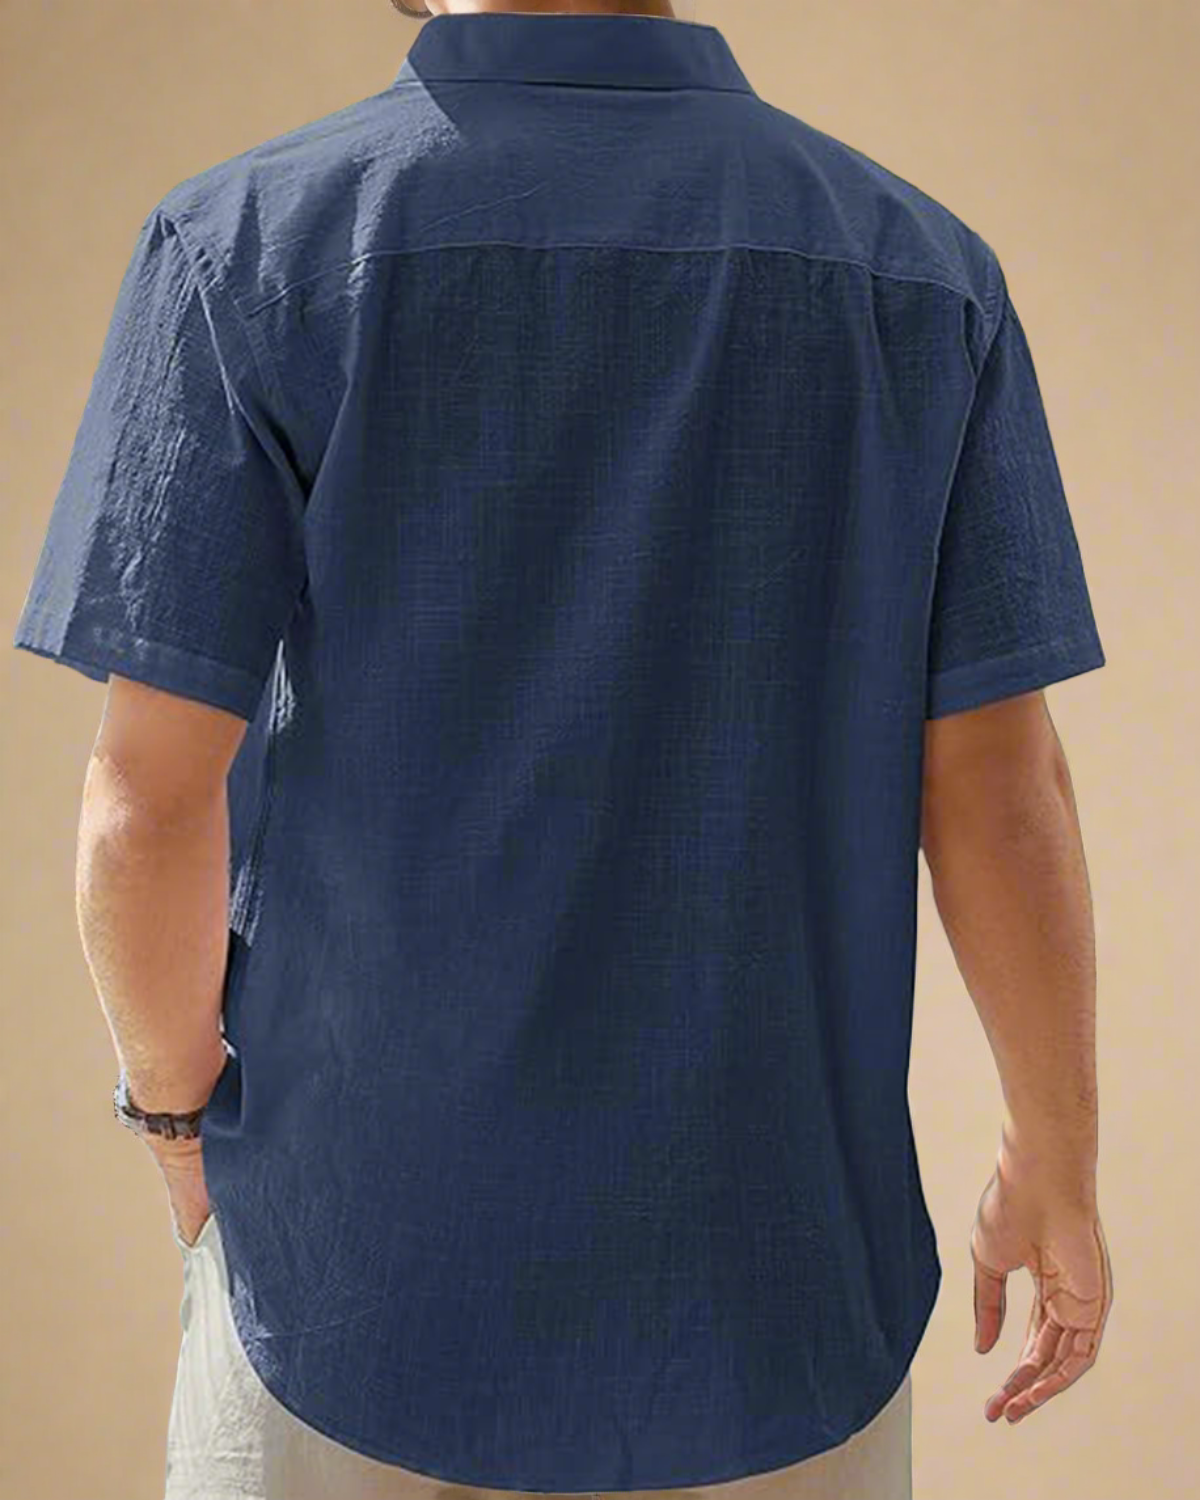 men-short-sleeve-navy-shirt-with-buttons-cotton-linen-blend-4